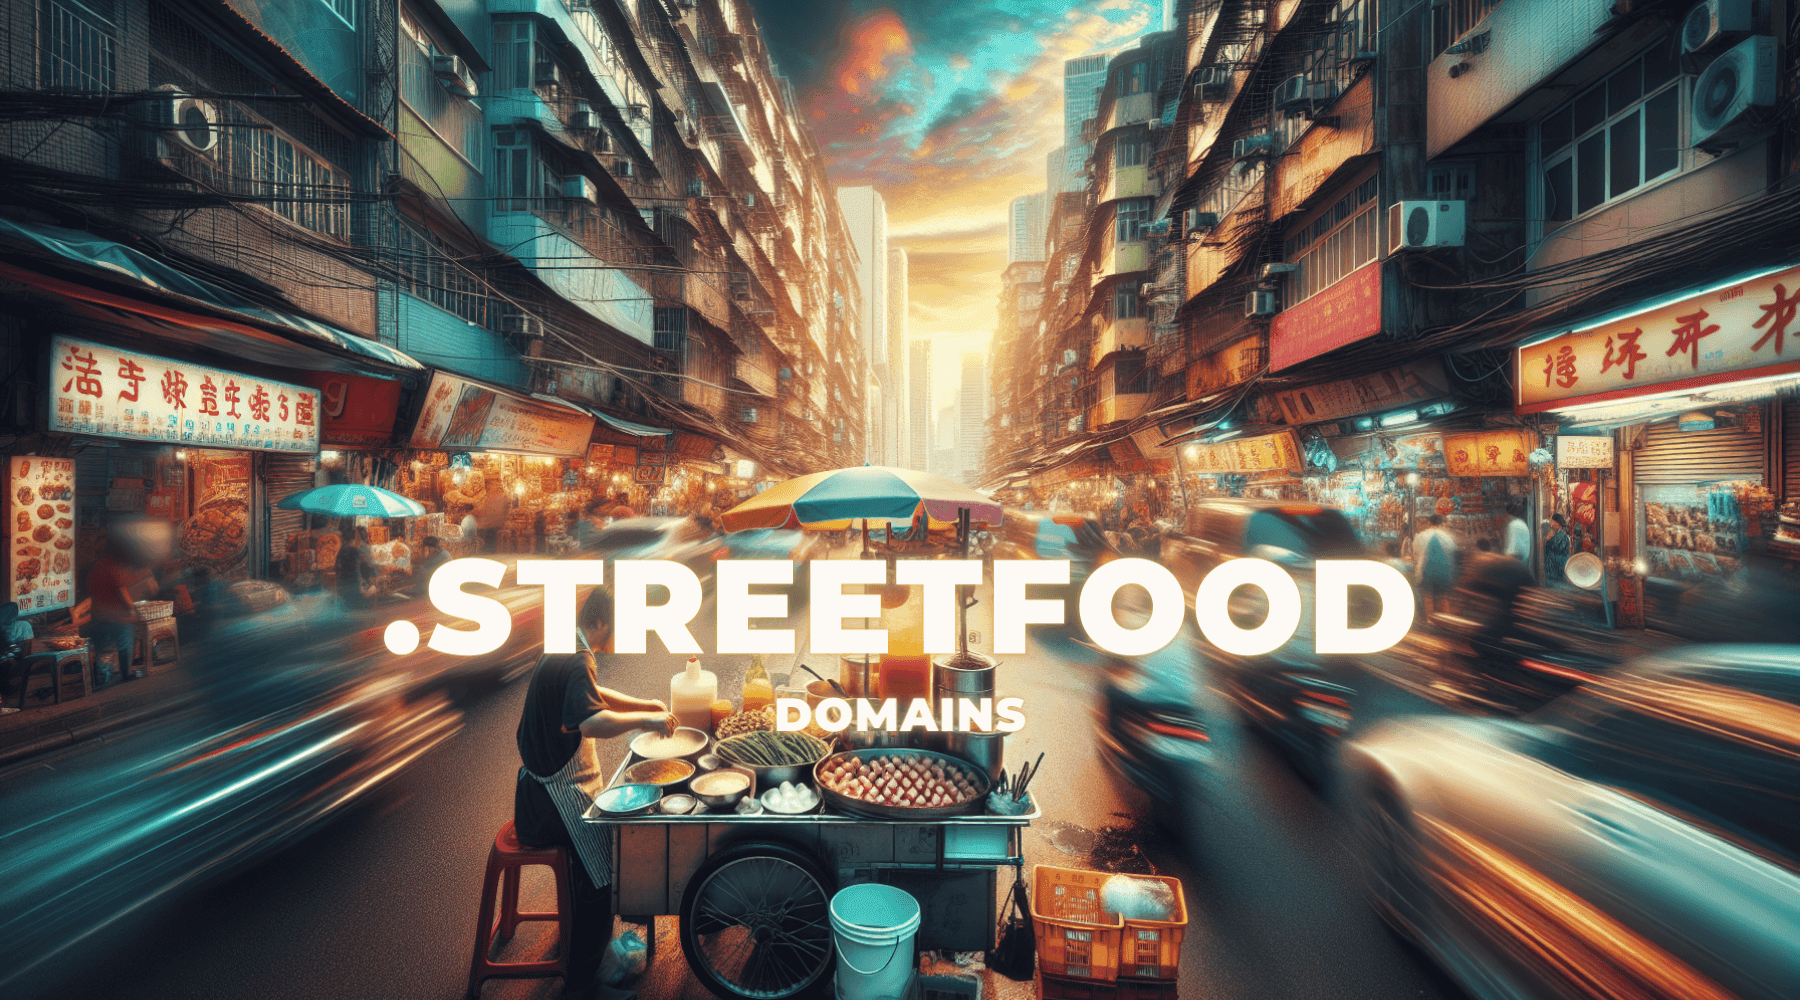 streetfood background image